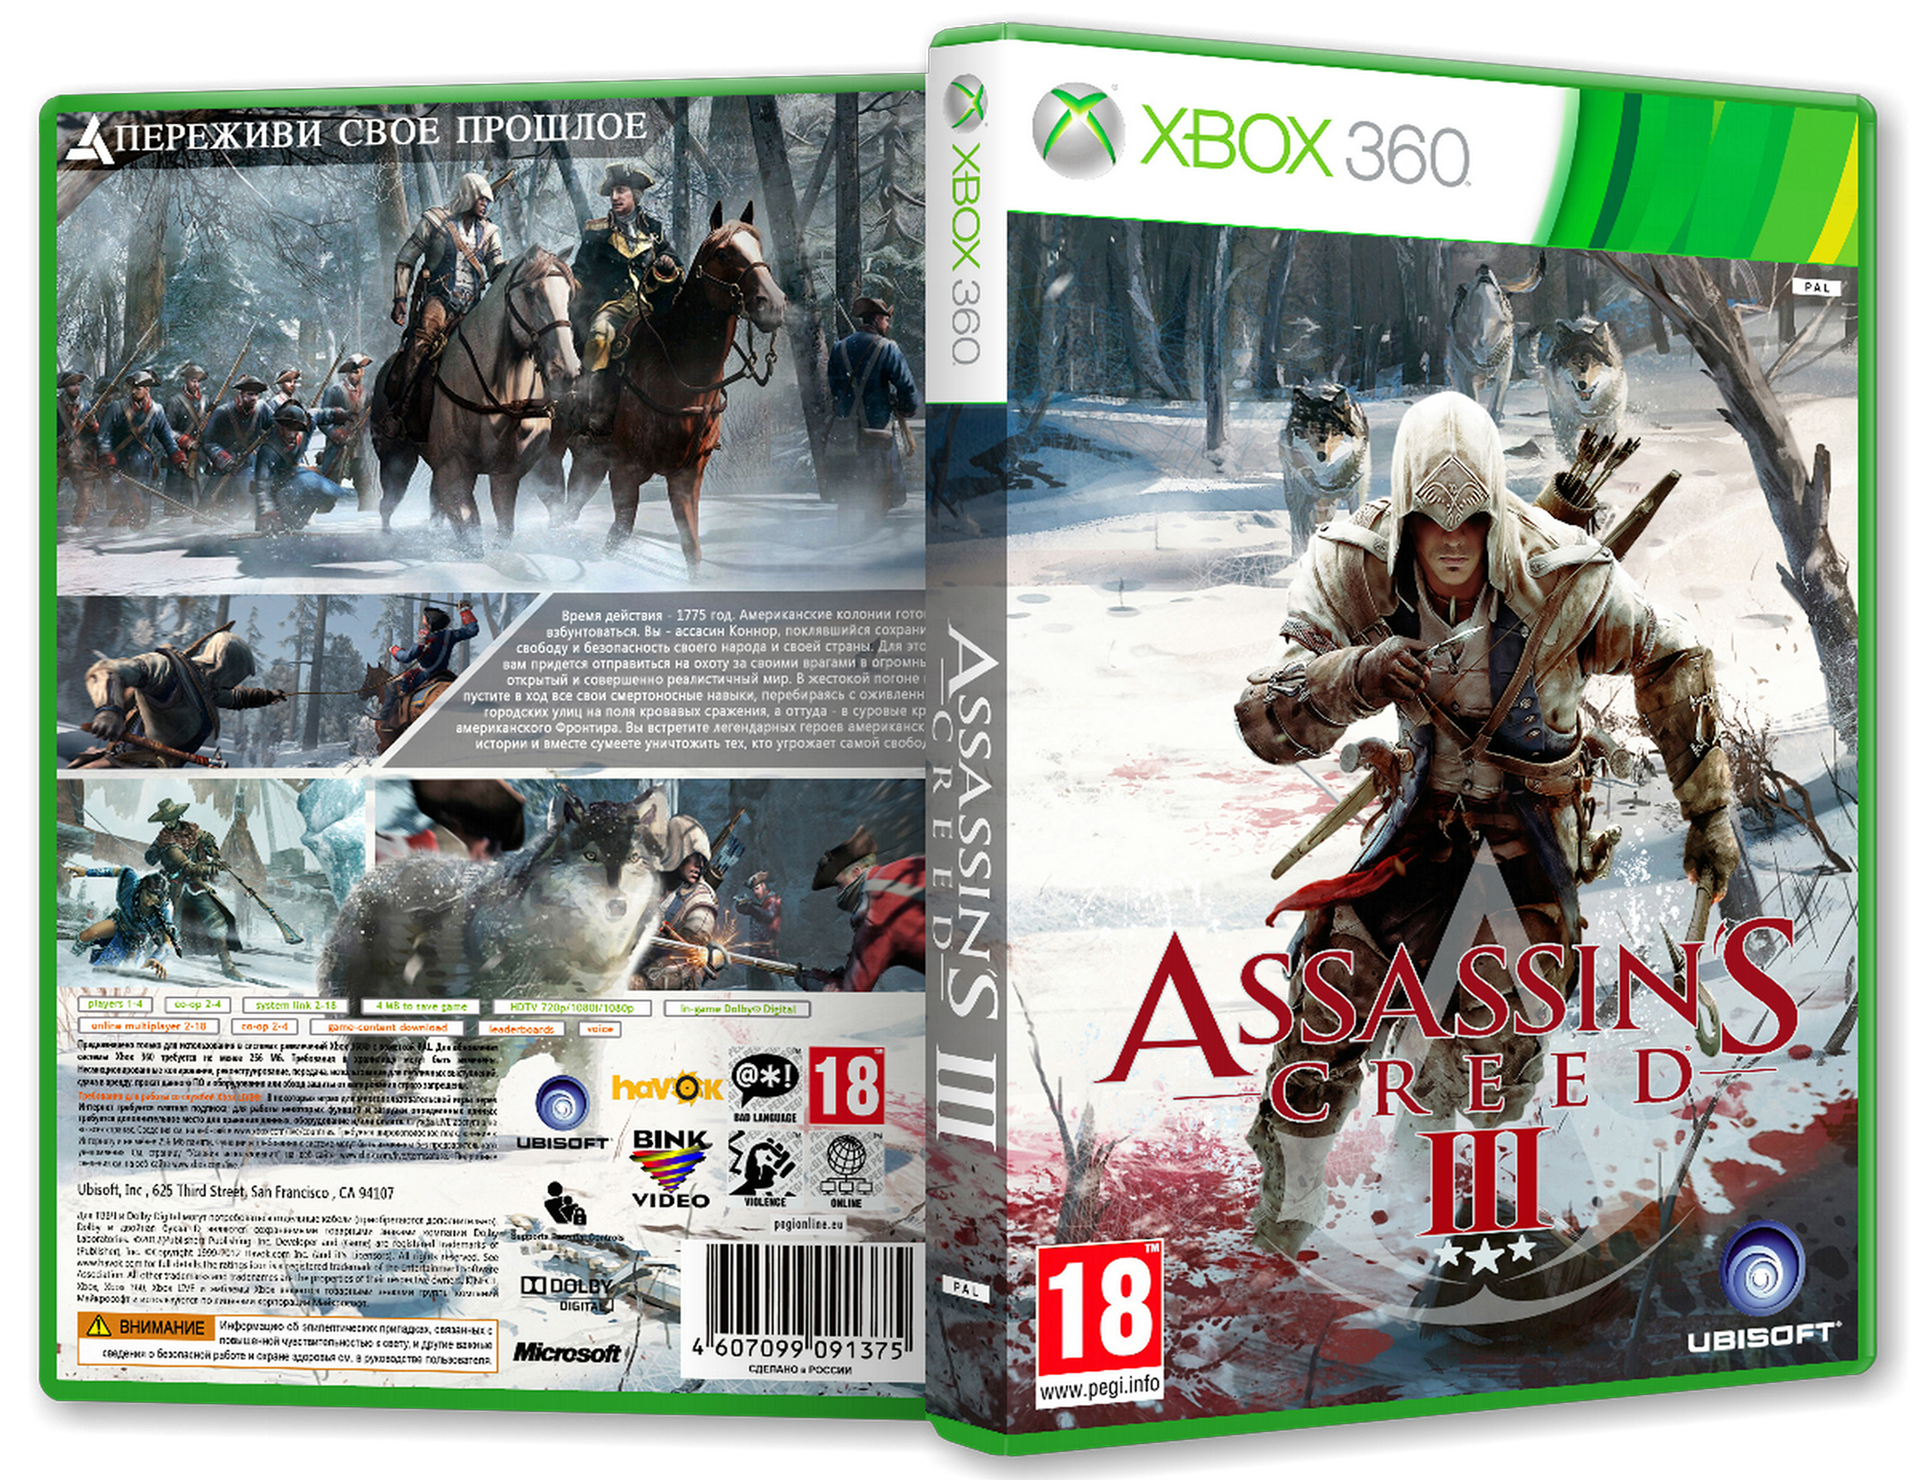 Ассасин крид икс бокс. Ассасин Крид 3 Xbox 360. Assassins Creed 3 [Xbox 360]. Ассасин Крид 3 на хбокс 360. Assassins Creed 3 диск для Xbox 360.